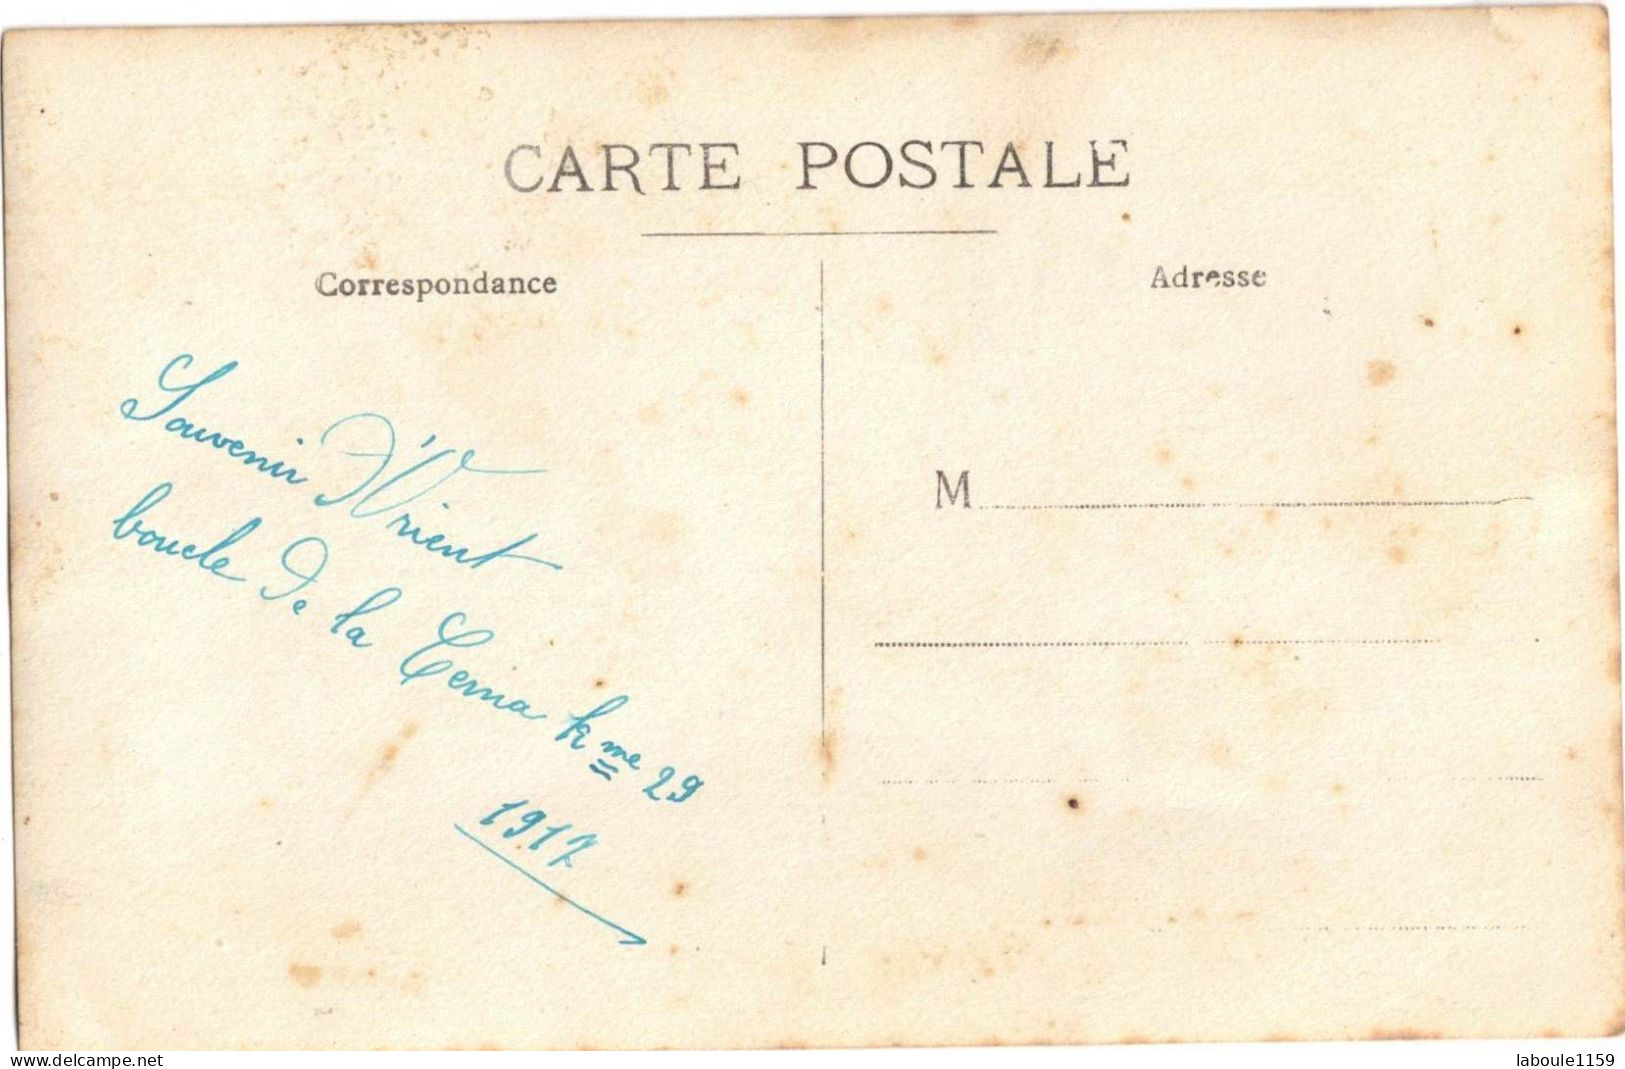 SERBIE SOUVENIR D'ORIENT ANNEE 1919  CARTE PHOTO BROMURE BOUCLE DE CERNA  Km 29 FEMME ET HOMME MILITARIA ? - CIRCULEE - Servië